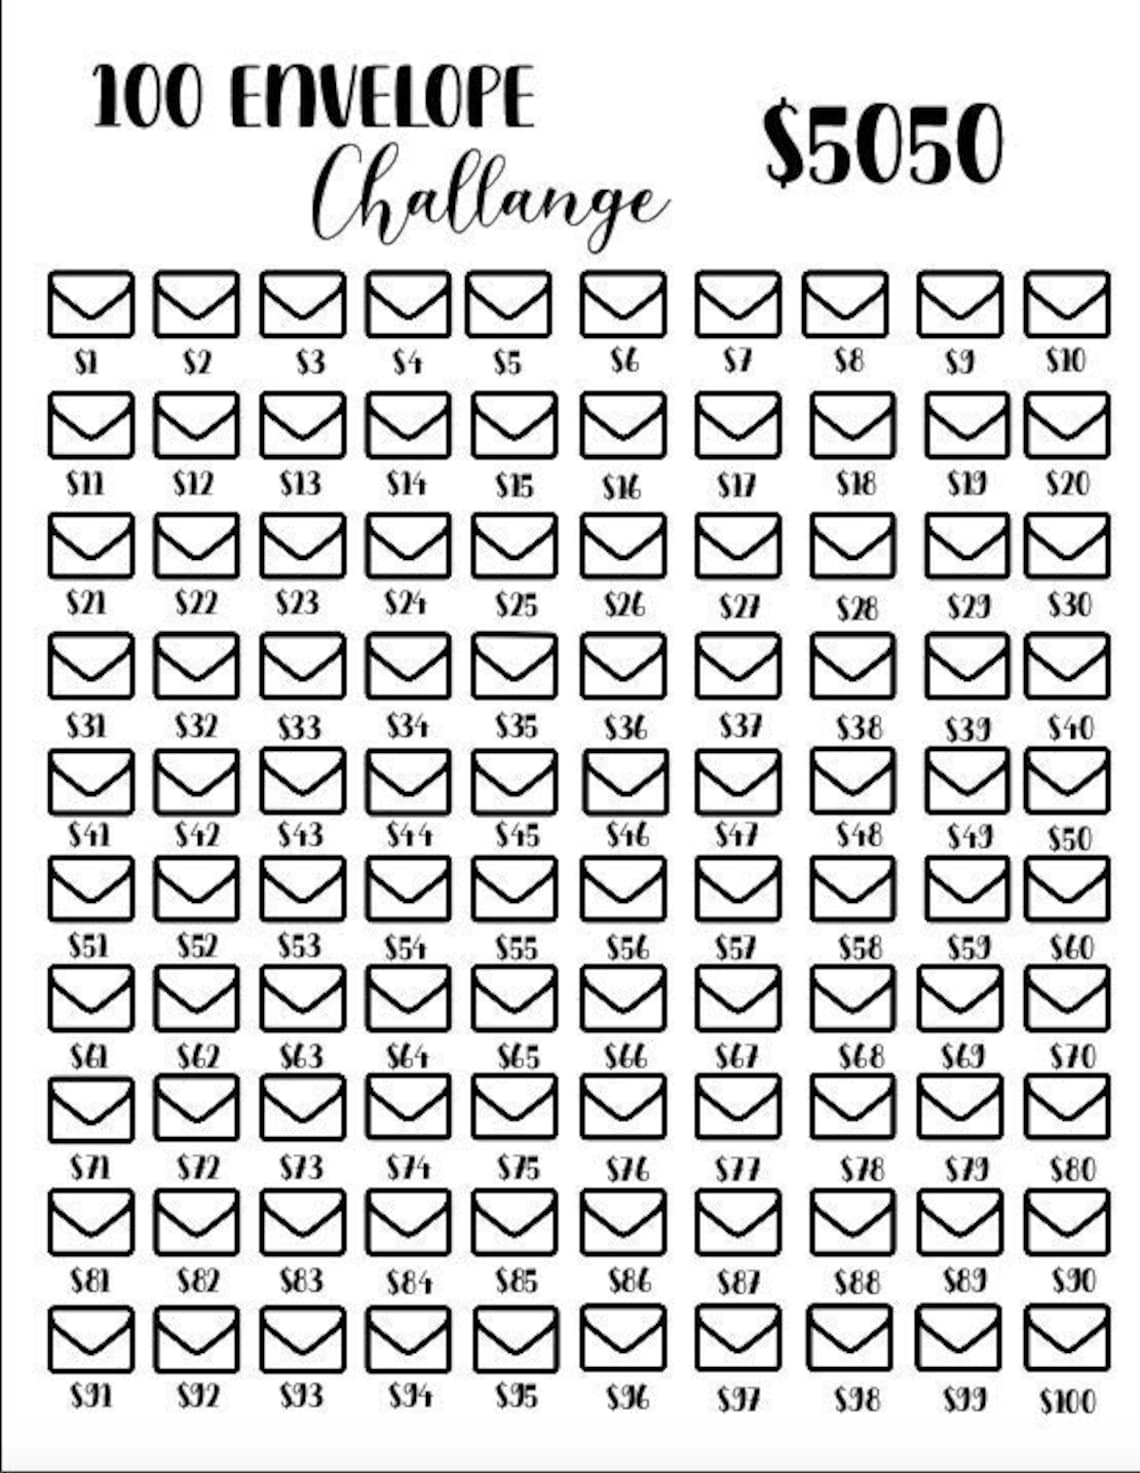 100-envelope-challenge-pdf-saving-challenge-pdf-budgeting-etsy